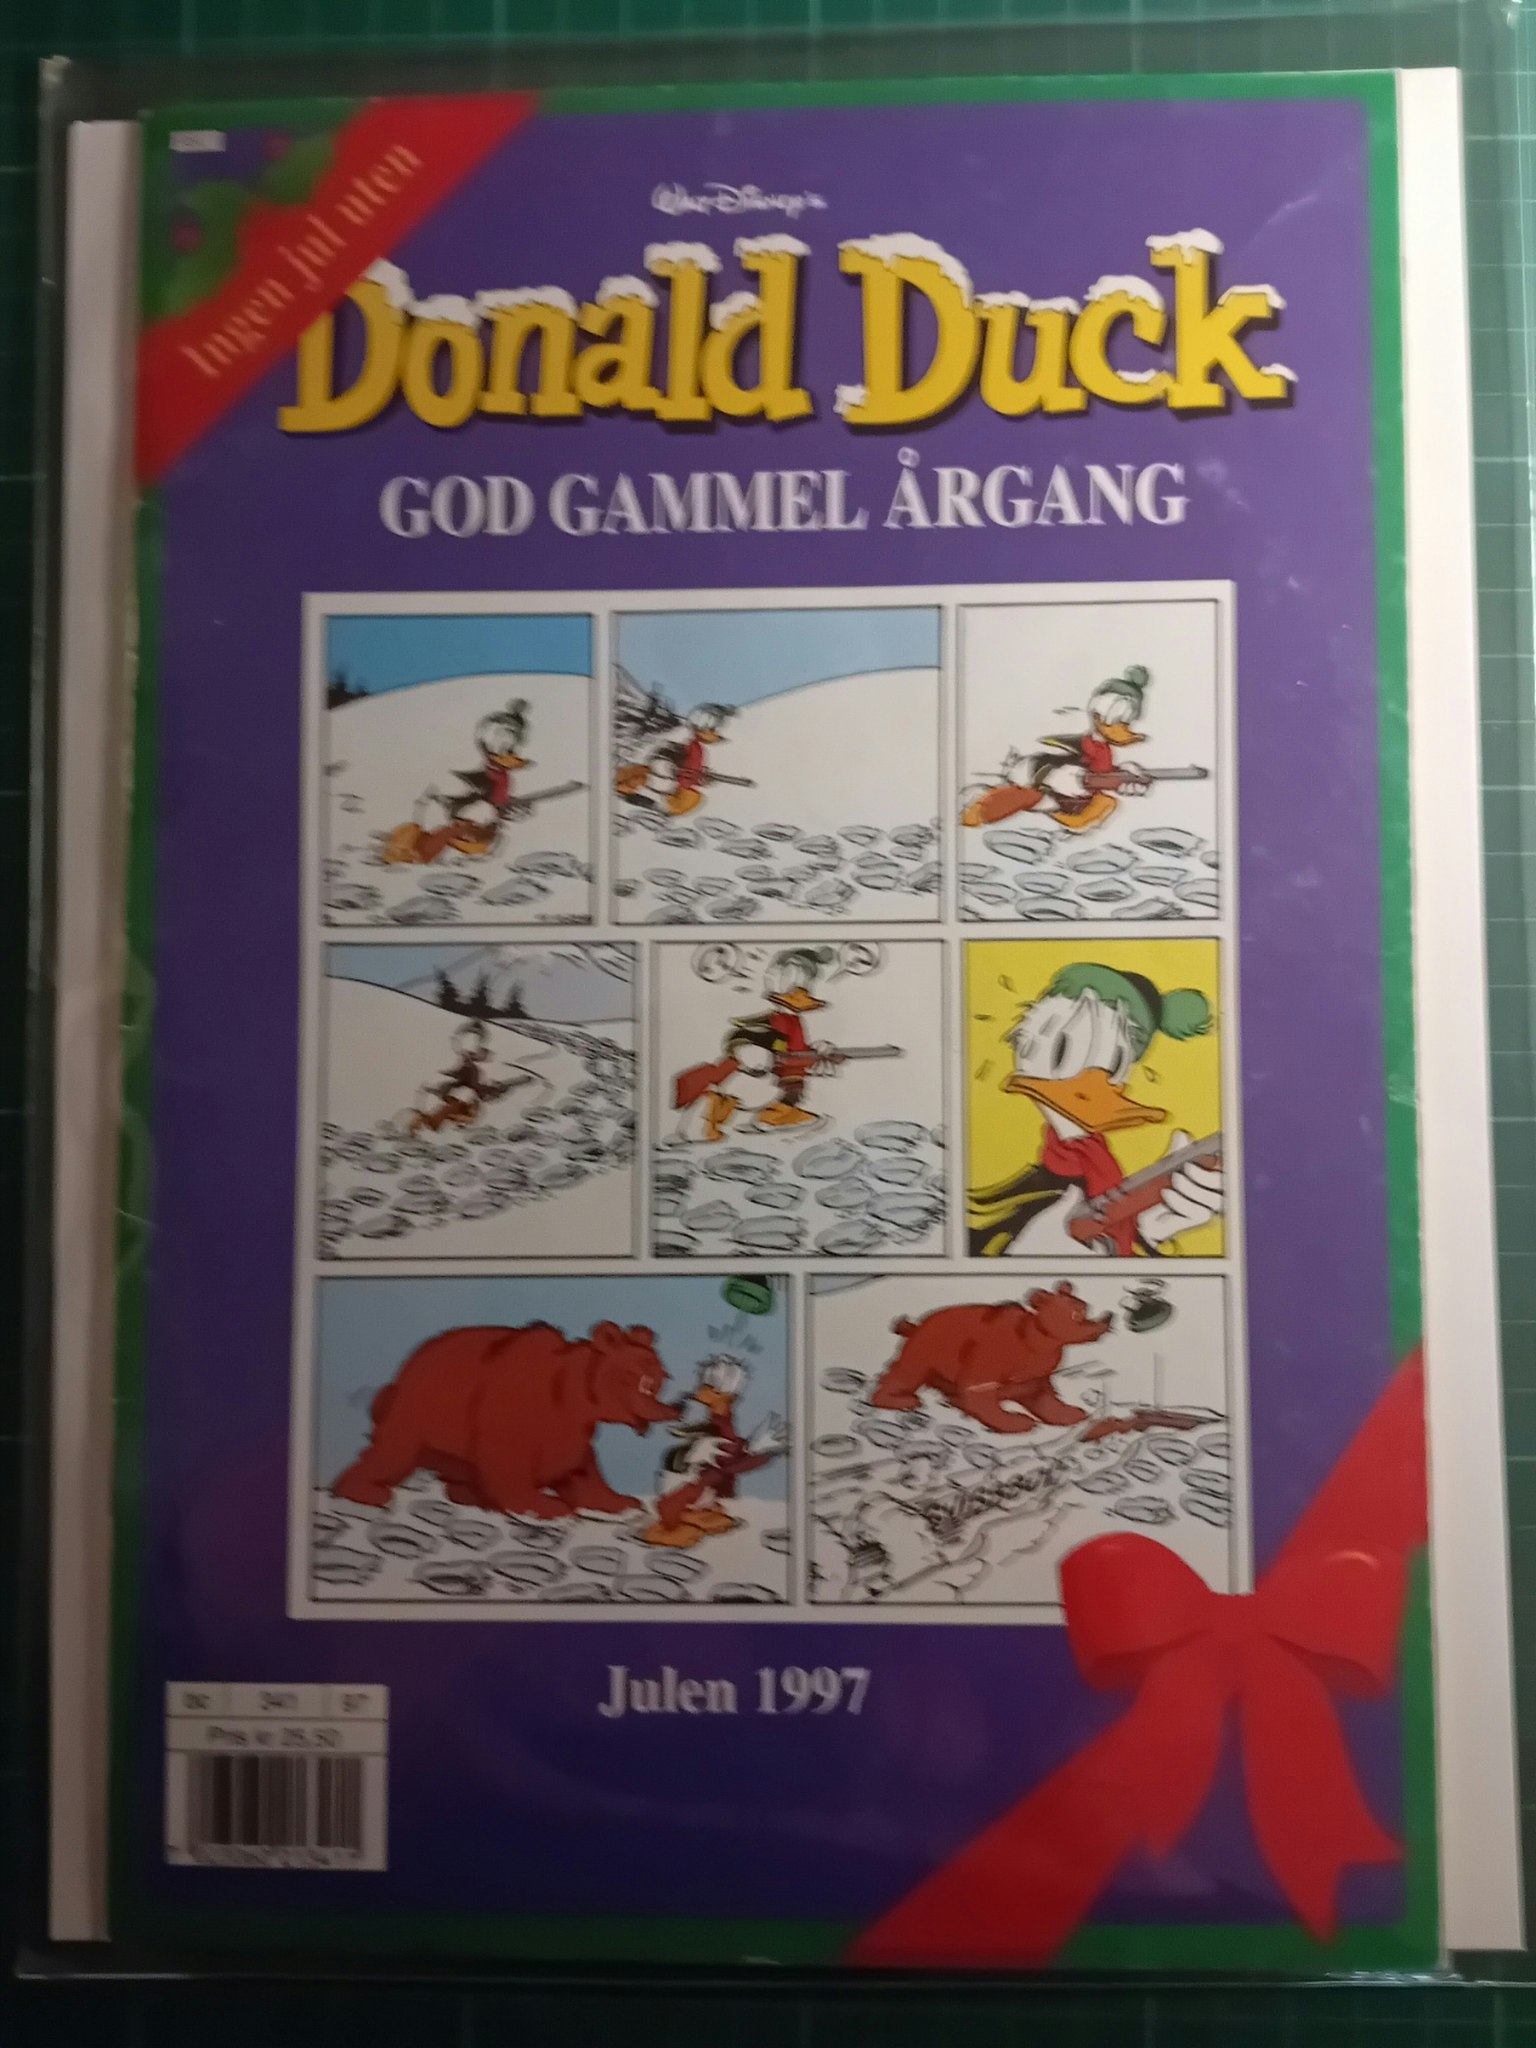 Donald Duck God gammel årgang 1997 m/plastlomme og bakark